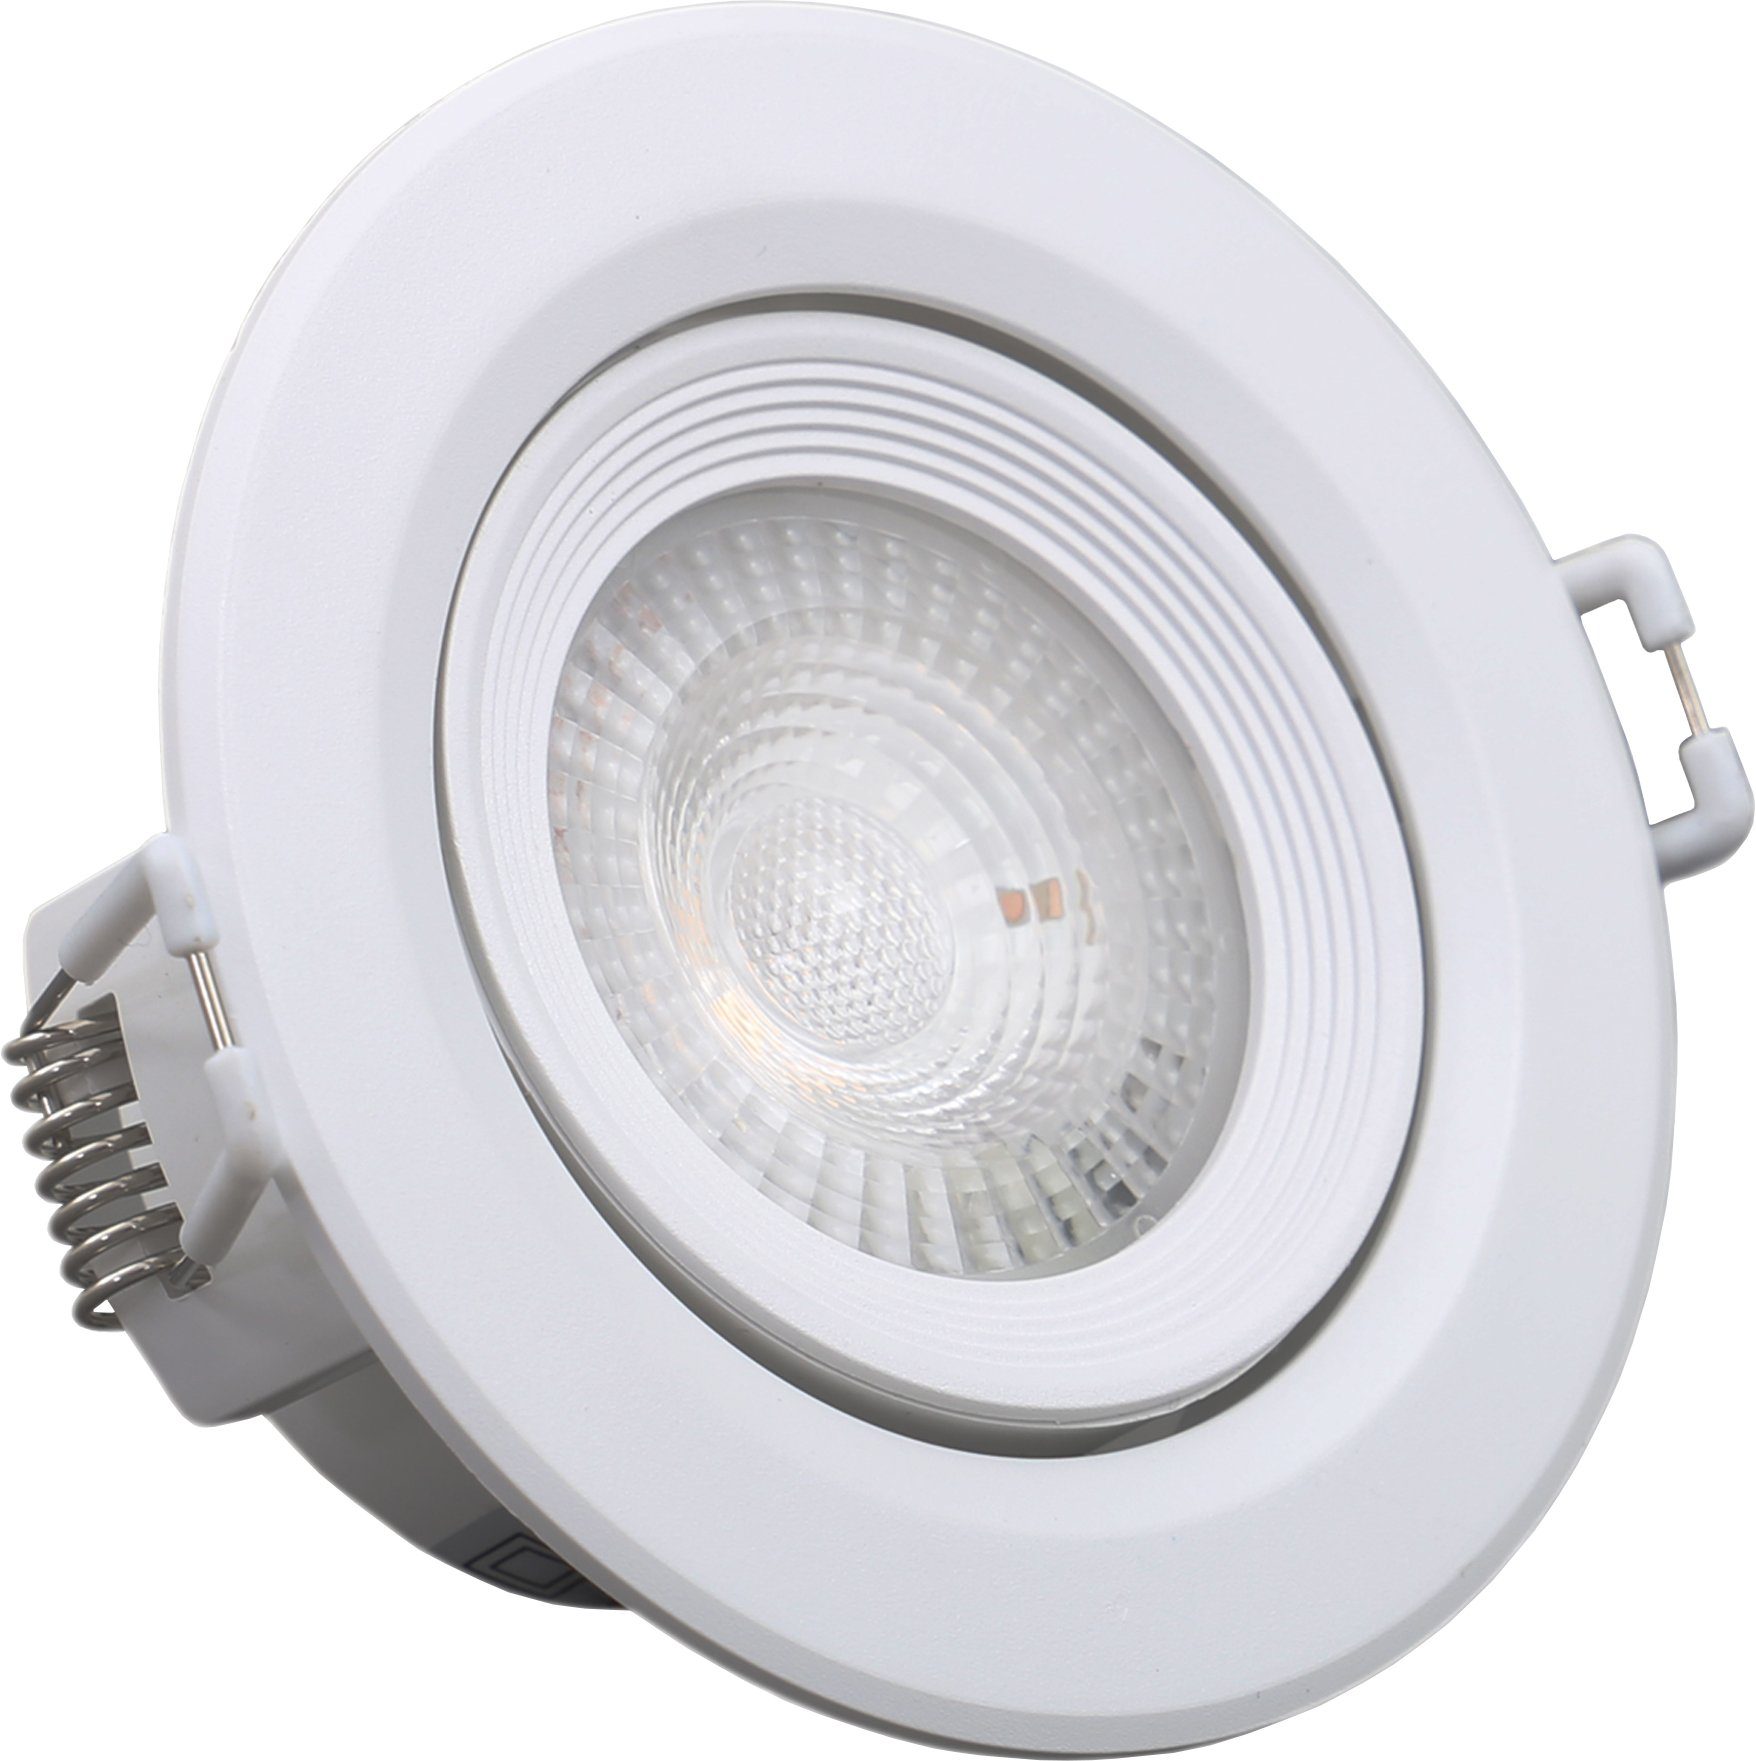 5er 230V, fest B.K.Licht integriert, Einbauleuchte, ultra-flach, Lampen, LED Warmweiß, Einbaustrahler, Set LED Einbauspots,